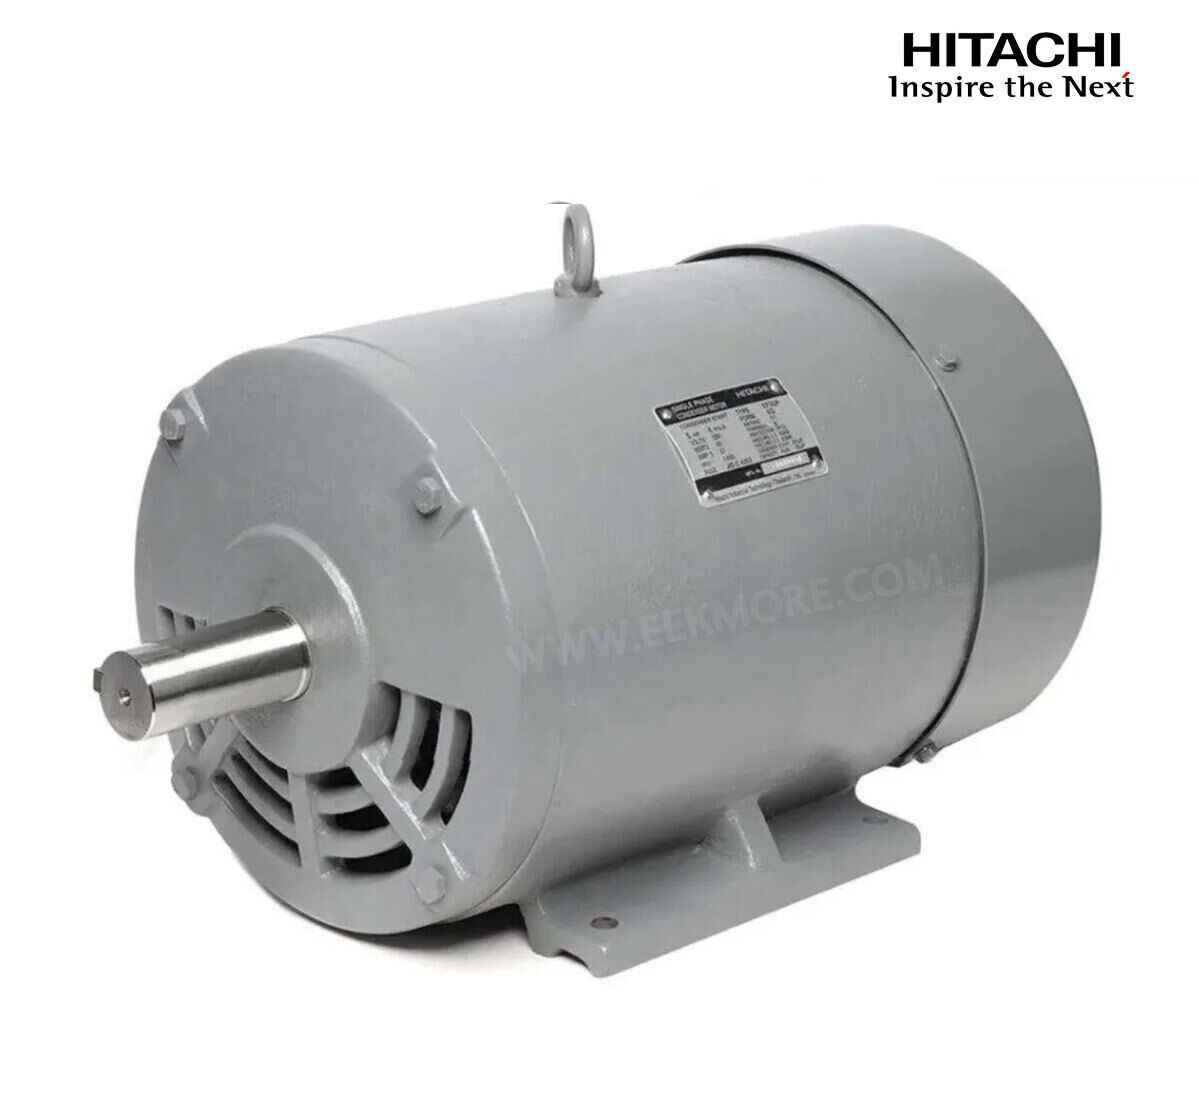 มอเตอร์ฮิตาชิของแท้ 100% HITACHI รุ่น TFO-KQ กำลัง 5 แรงม้า (3.7 KW.) กำลังไฟฟ้าที่ใช้ 220V ความเร็วรอบตัวเปล่า 1450 RPM แกนเพลามอเตอร์ 38 MM.รับประกัน 3 ปี มีของพร้อมจัดส่งทุกวัน